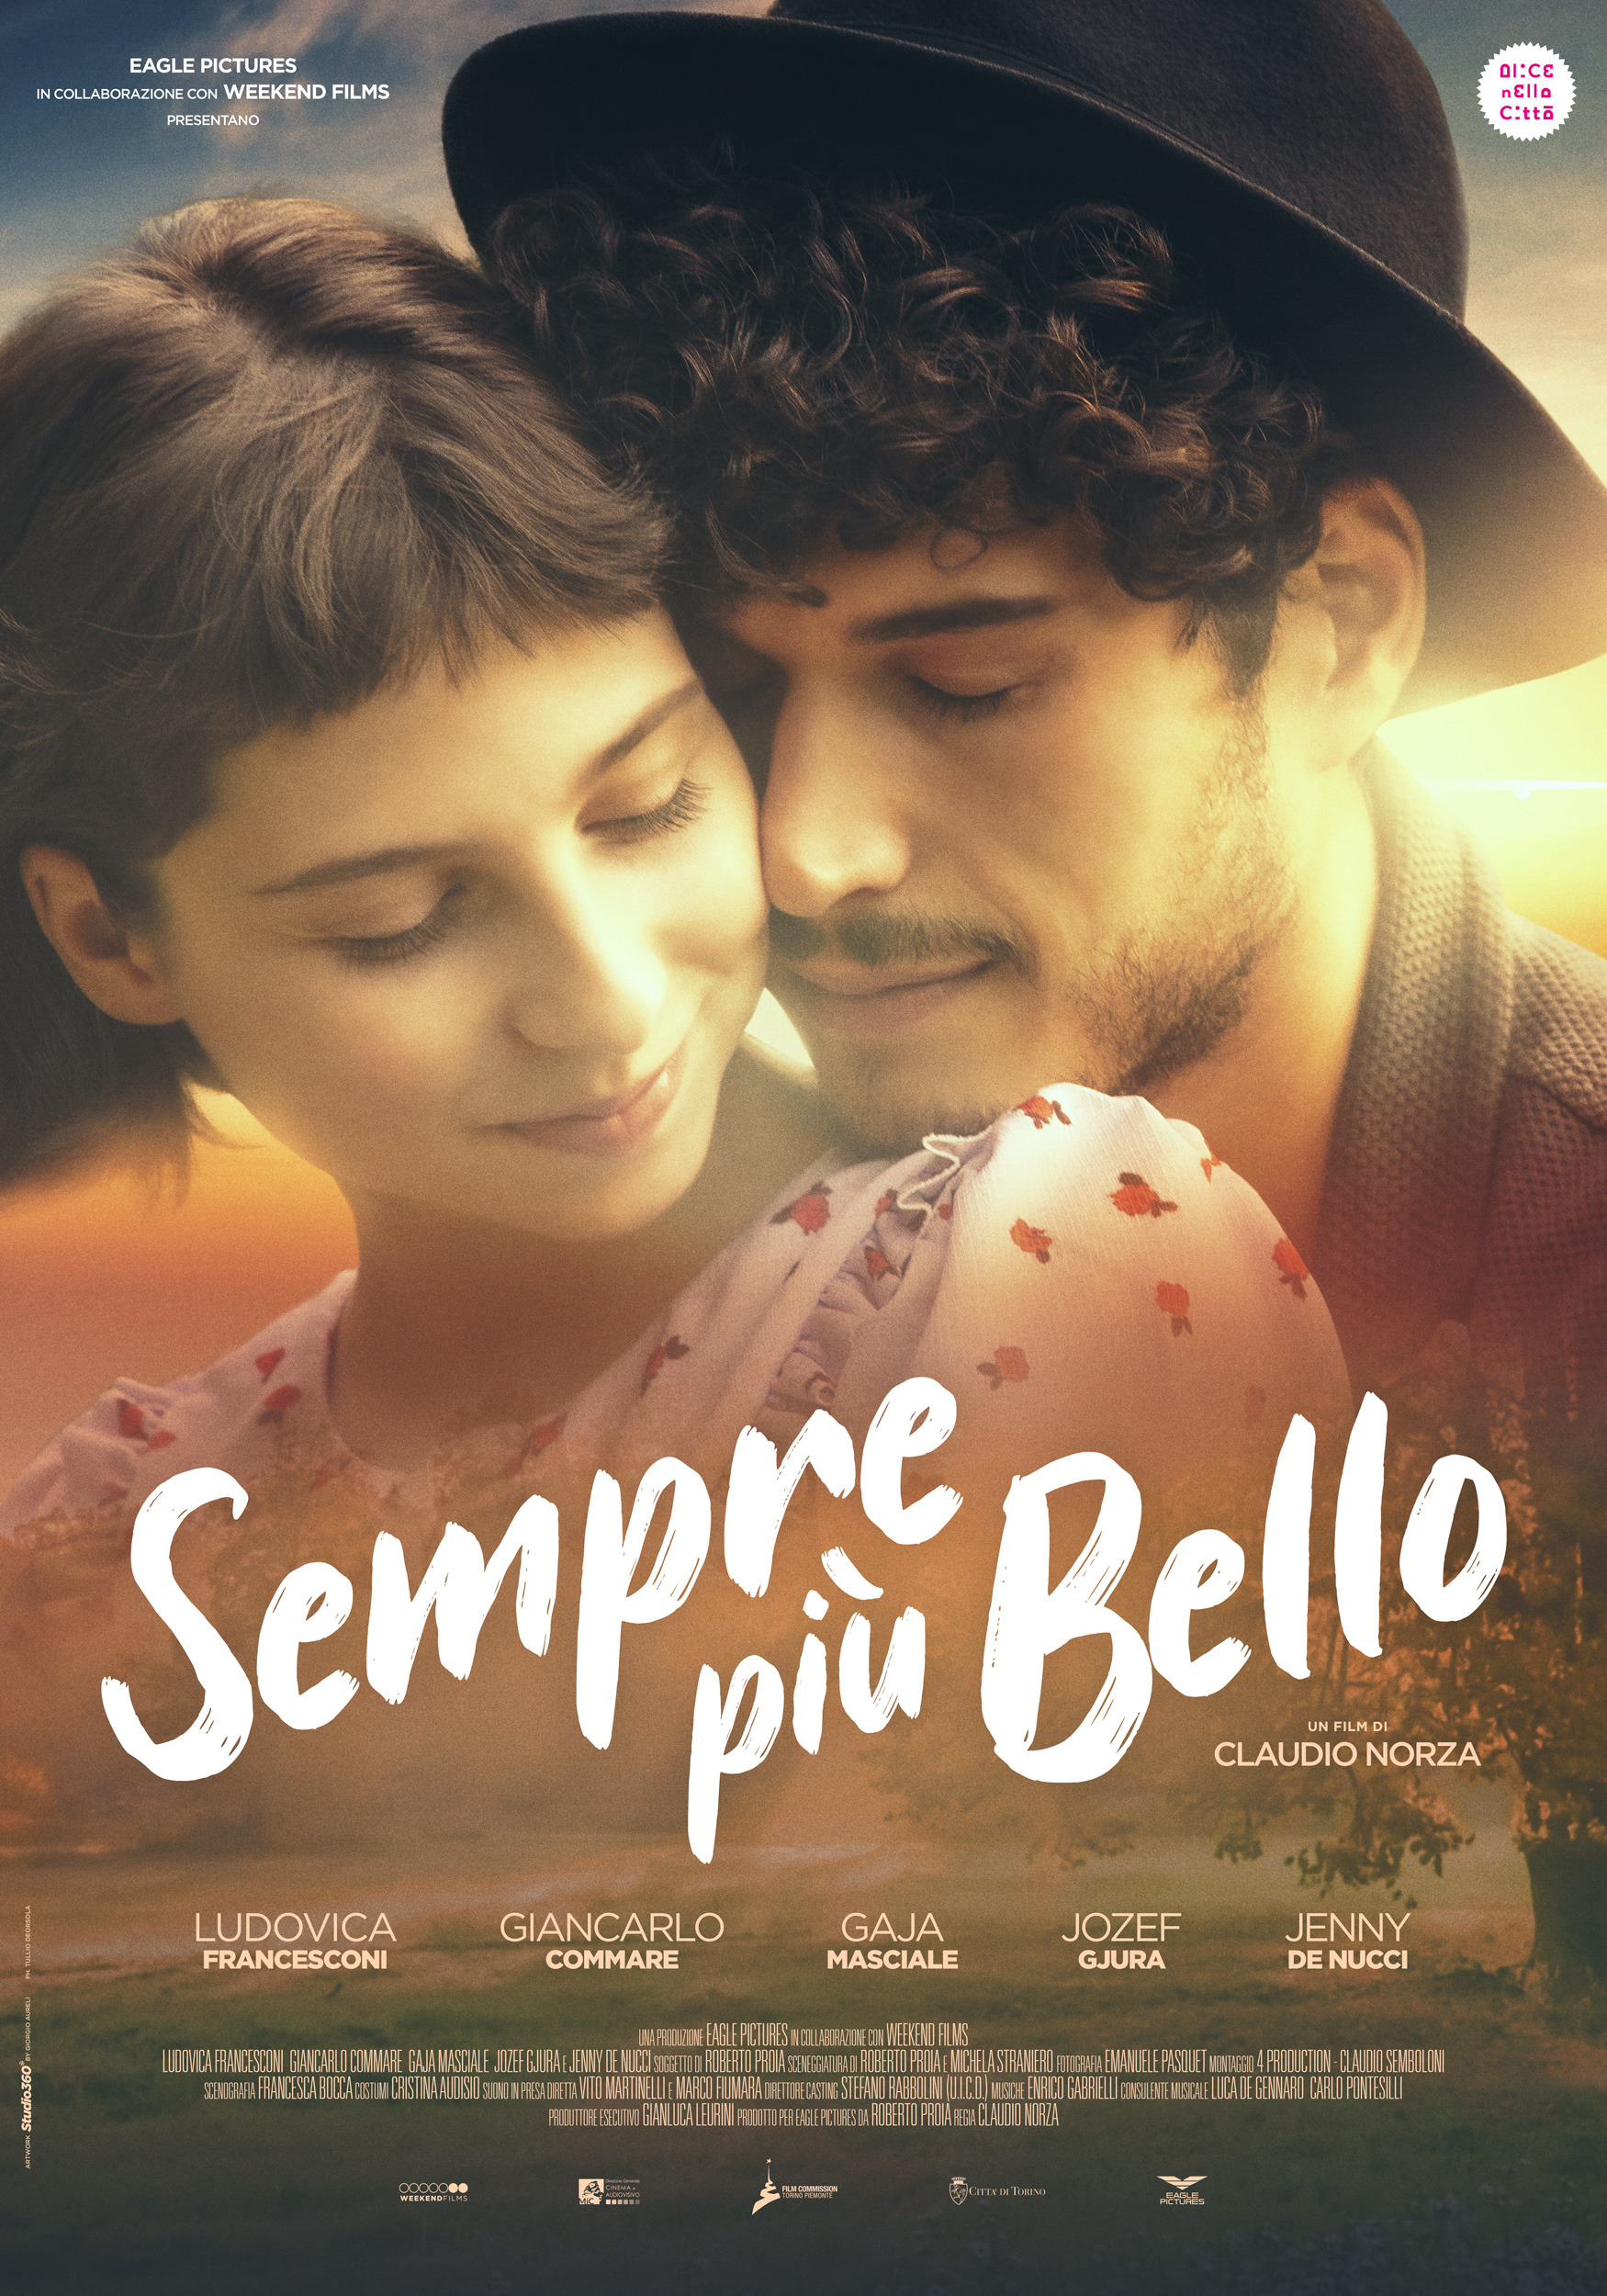 Mega Sized Movie Poster Image for Sempre più bello (#1 of 2)